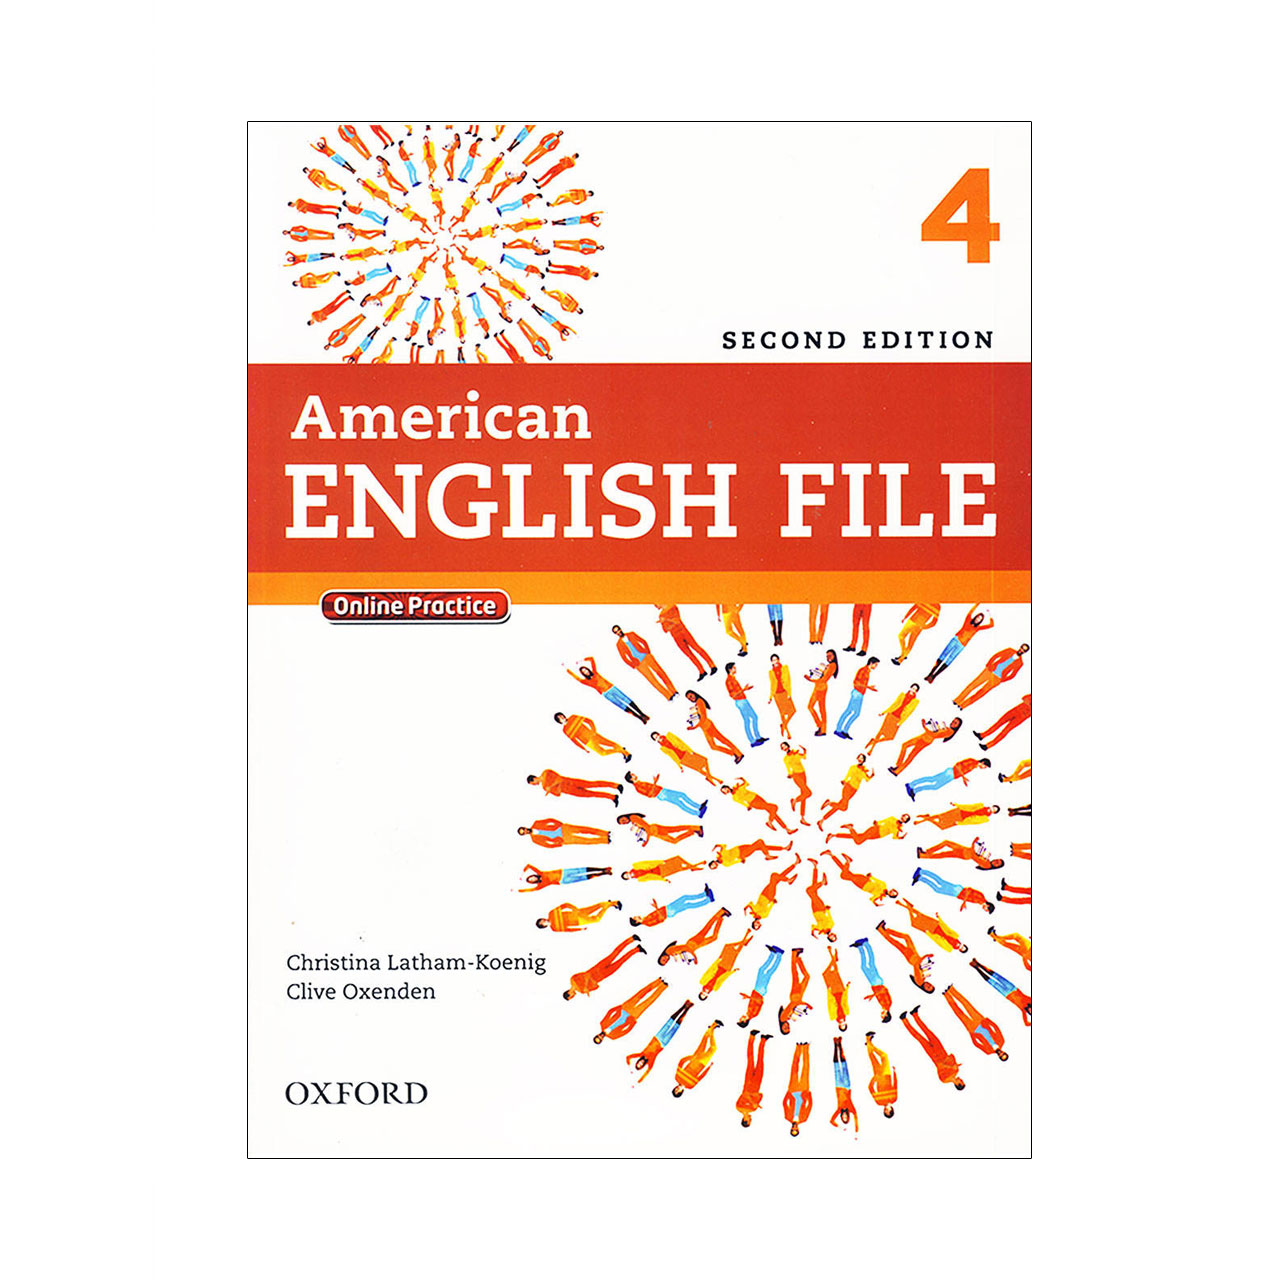 کتاب American English File 4 اثر جمعی از نویسندگان انتشارات Oxford